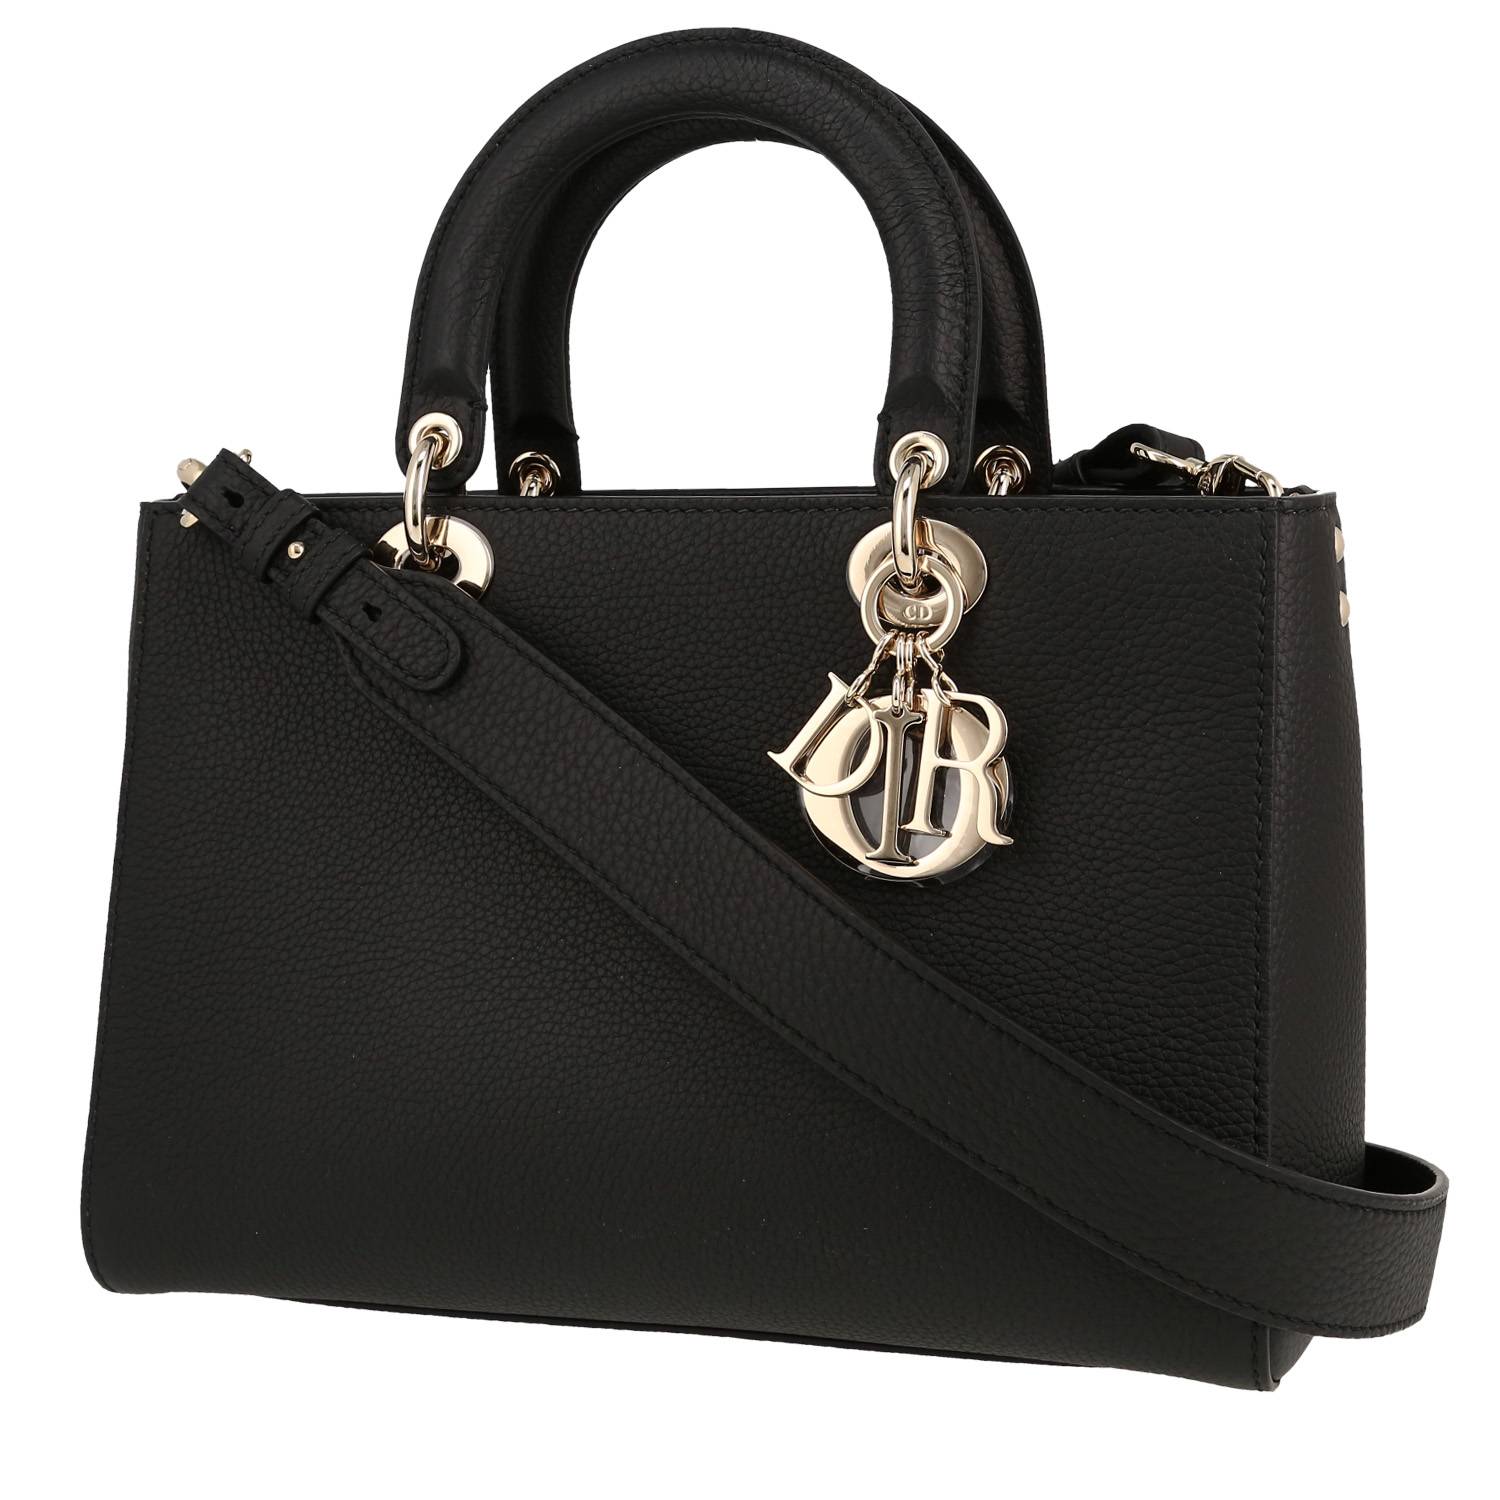 Lady D-Sire Handbag In Black Leather Taurillon Clémence